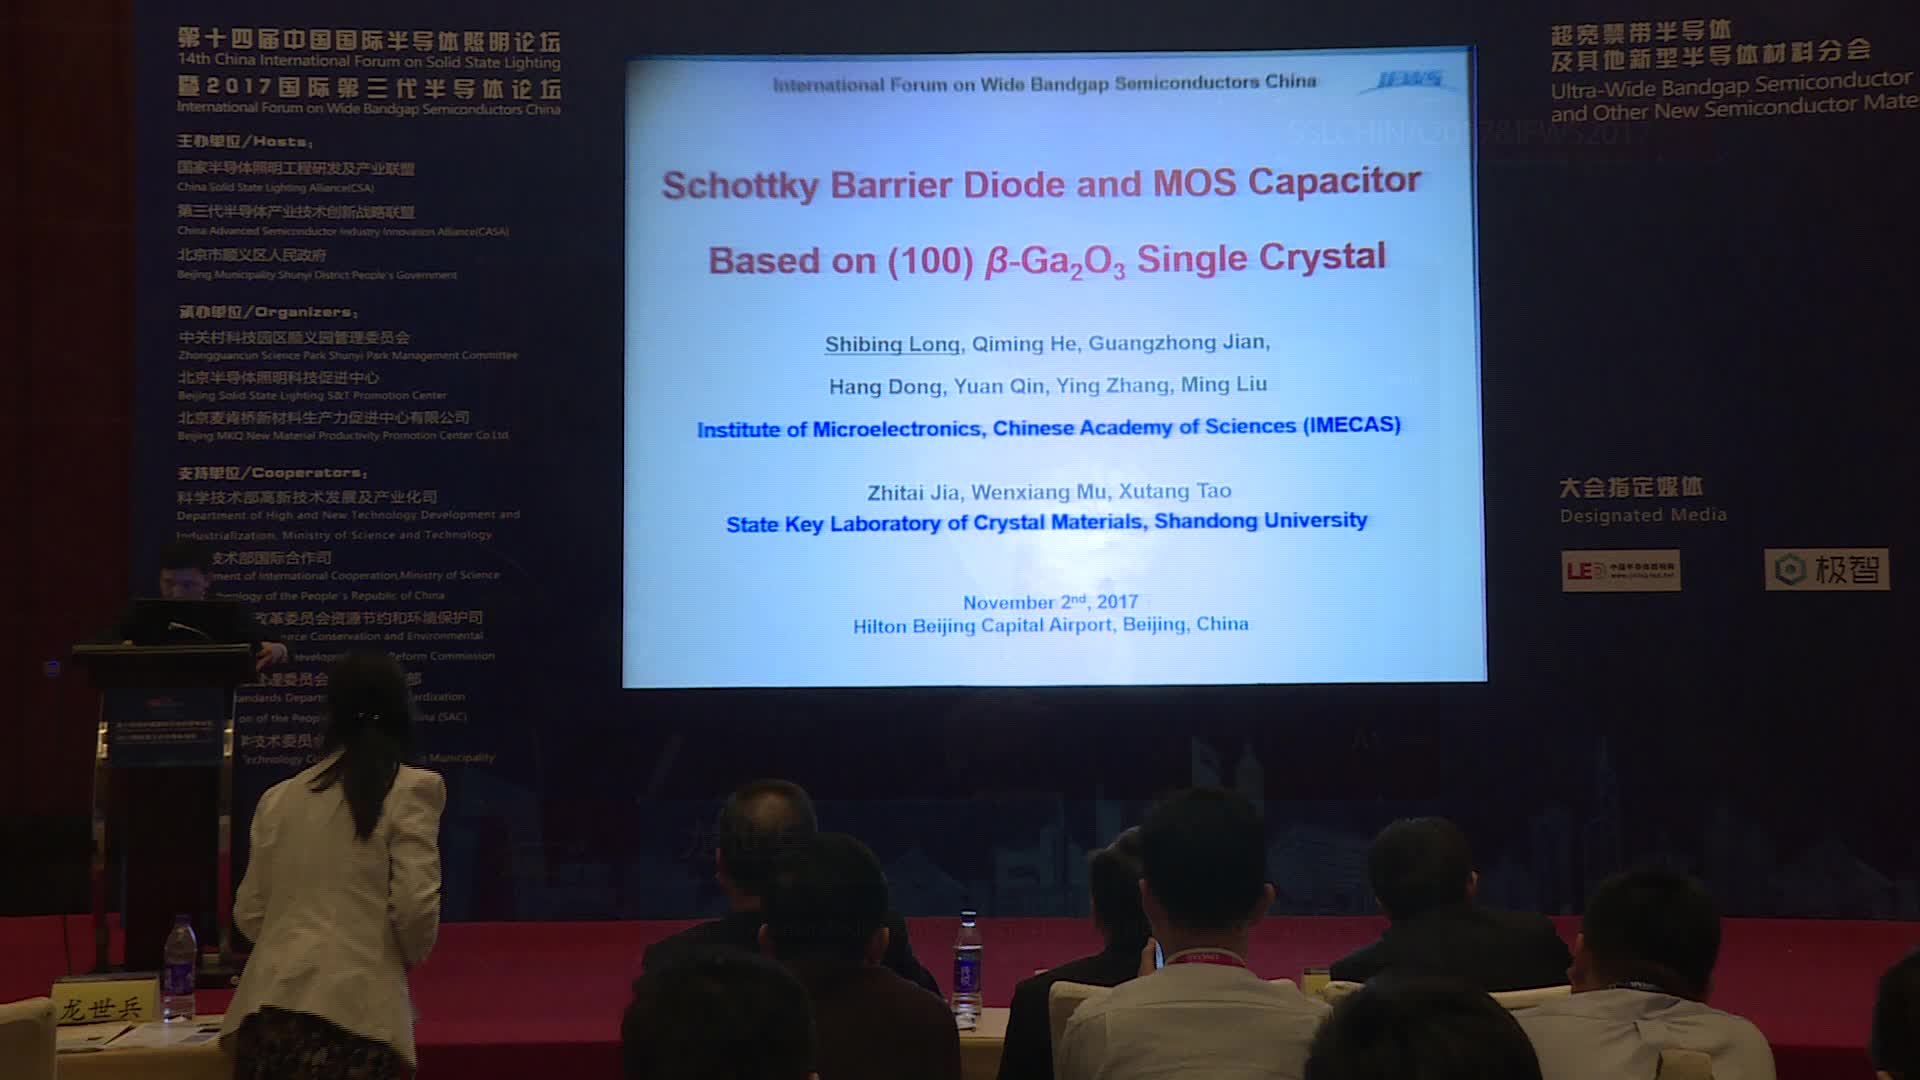 中国科学院微电子研究所研究员龙世兵：基于(100) β-Ga2O3 单晶的肖特基二极管和MOS电容